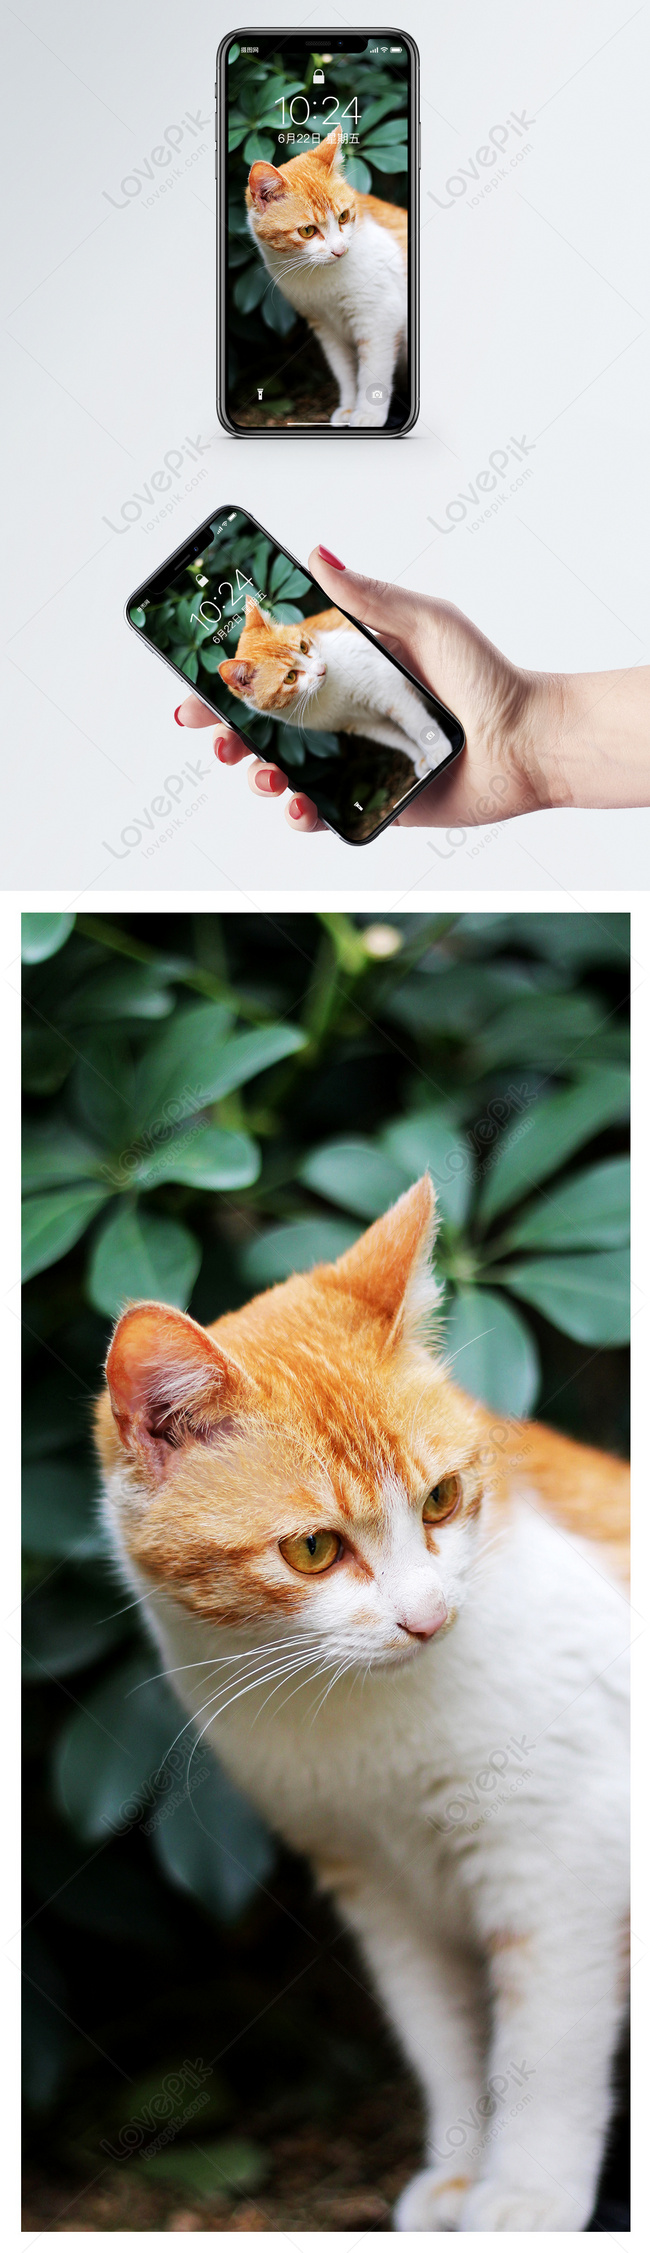 Hình nền điện thoại con mèo màu da cam - Khi bạn cần một hình nền điện thoại đáng yêu, không có gì tuyệt vời hơn một hình ảnh con mèo màu da cam độc đáo. Hãy tìm thấy sự độc đáo và sự nổi bật với hình nền này cho điện thoại của bạn.